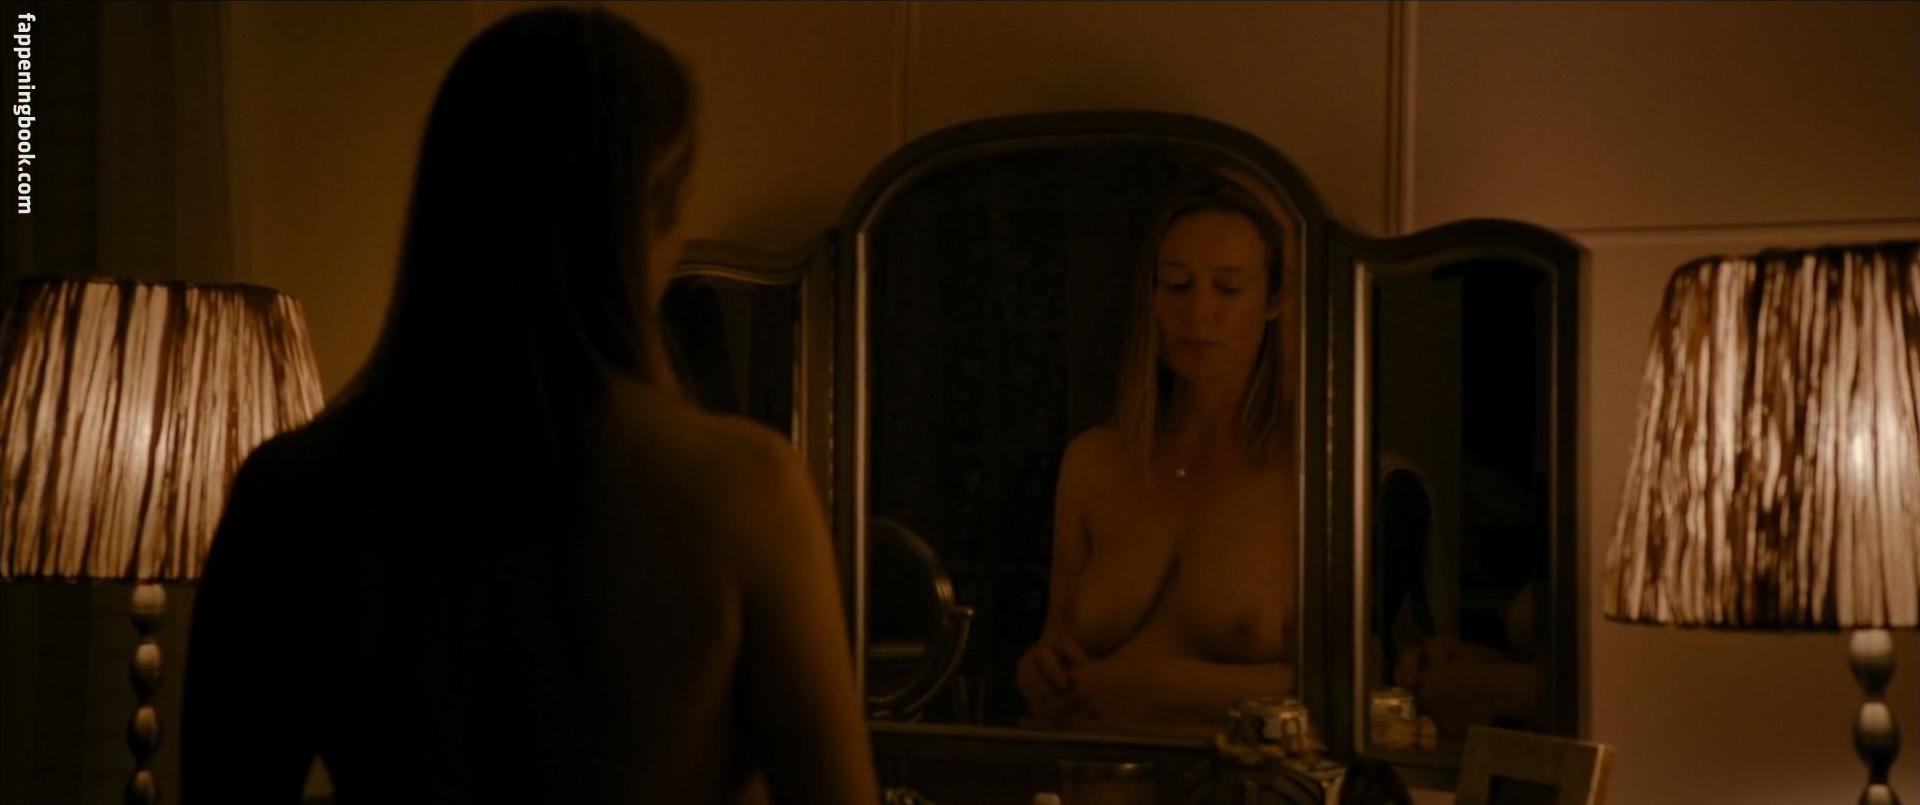 Jennifer ehle naked